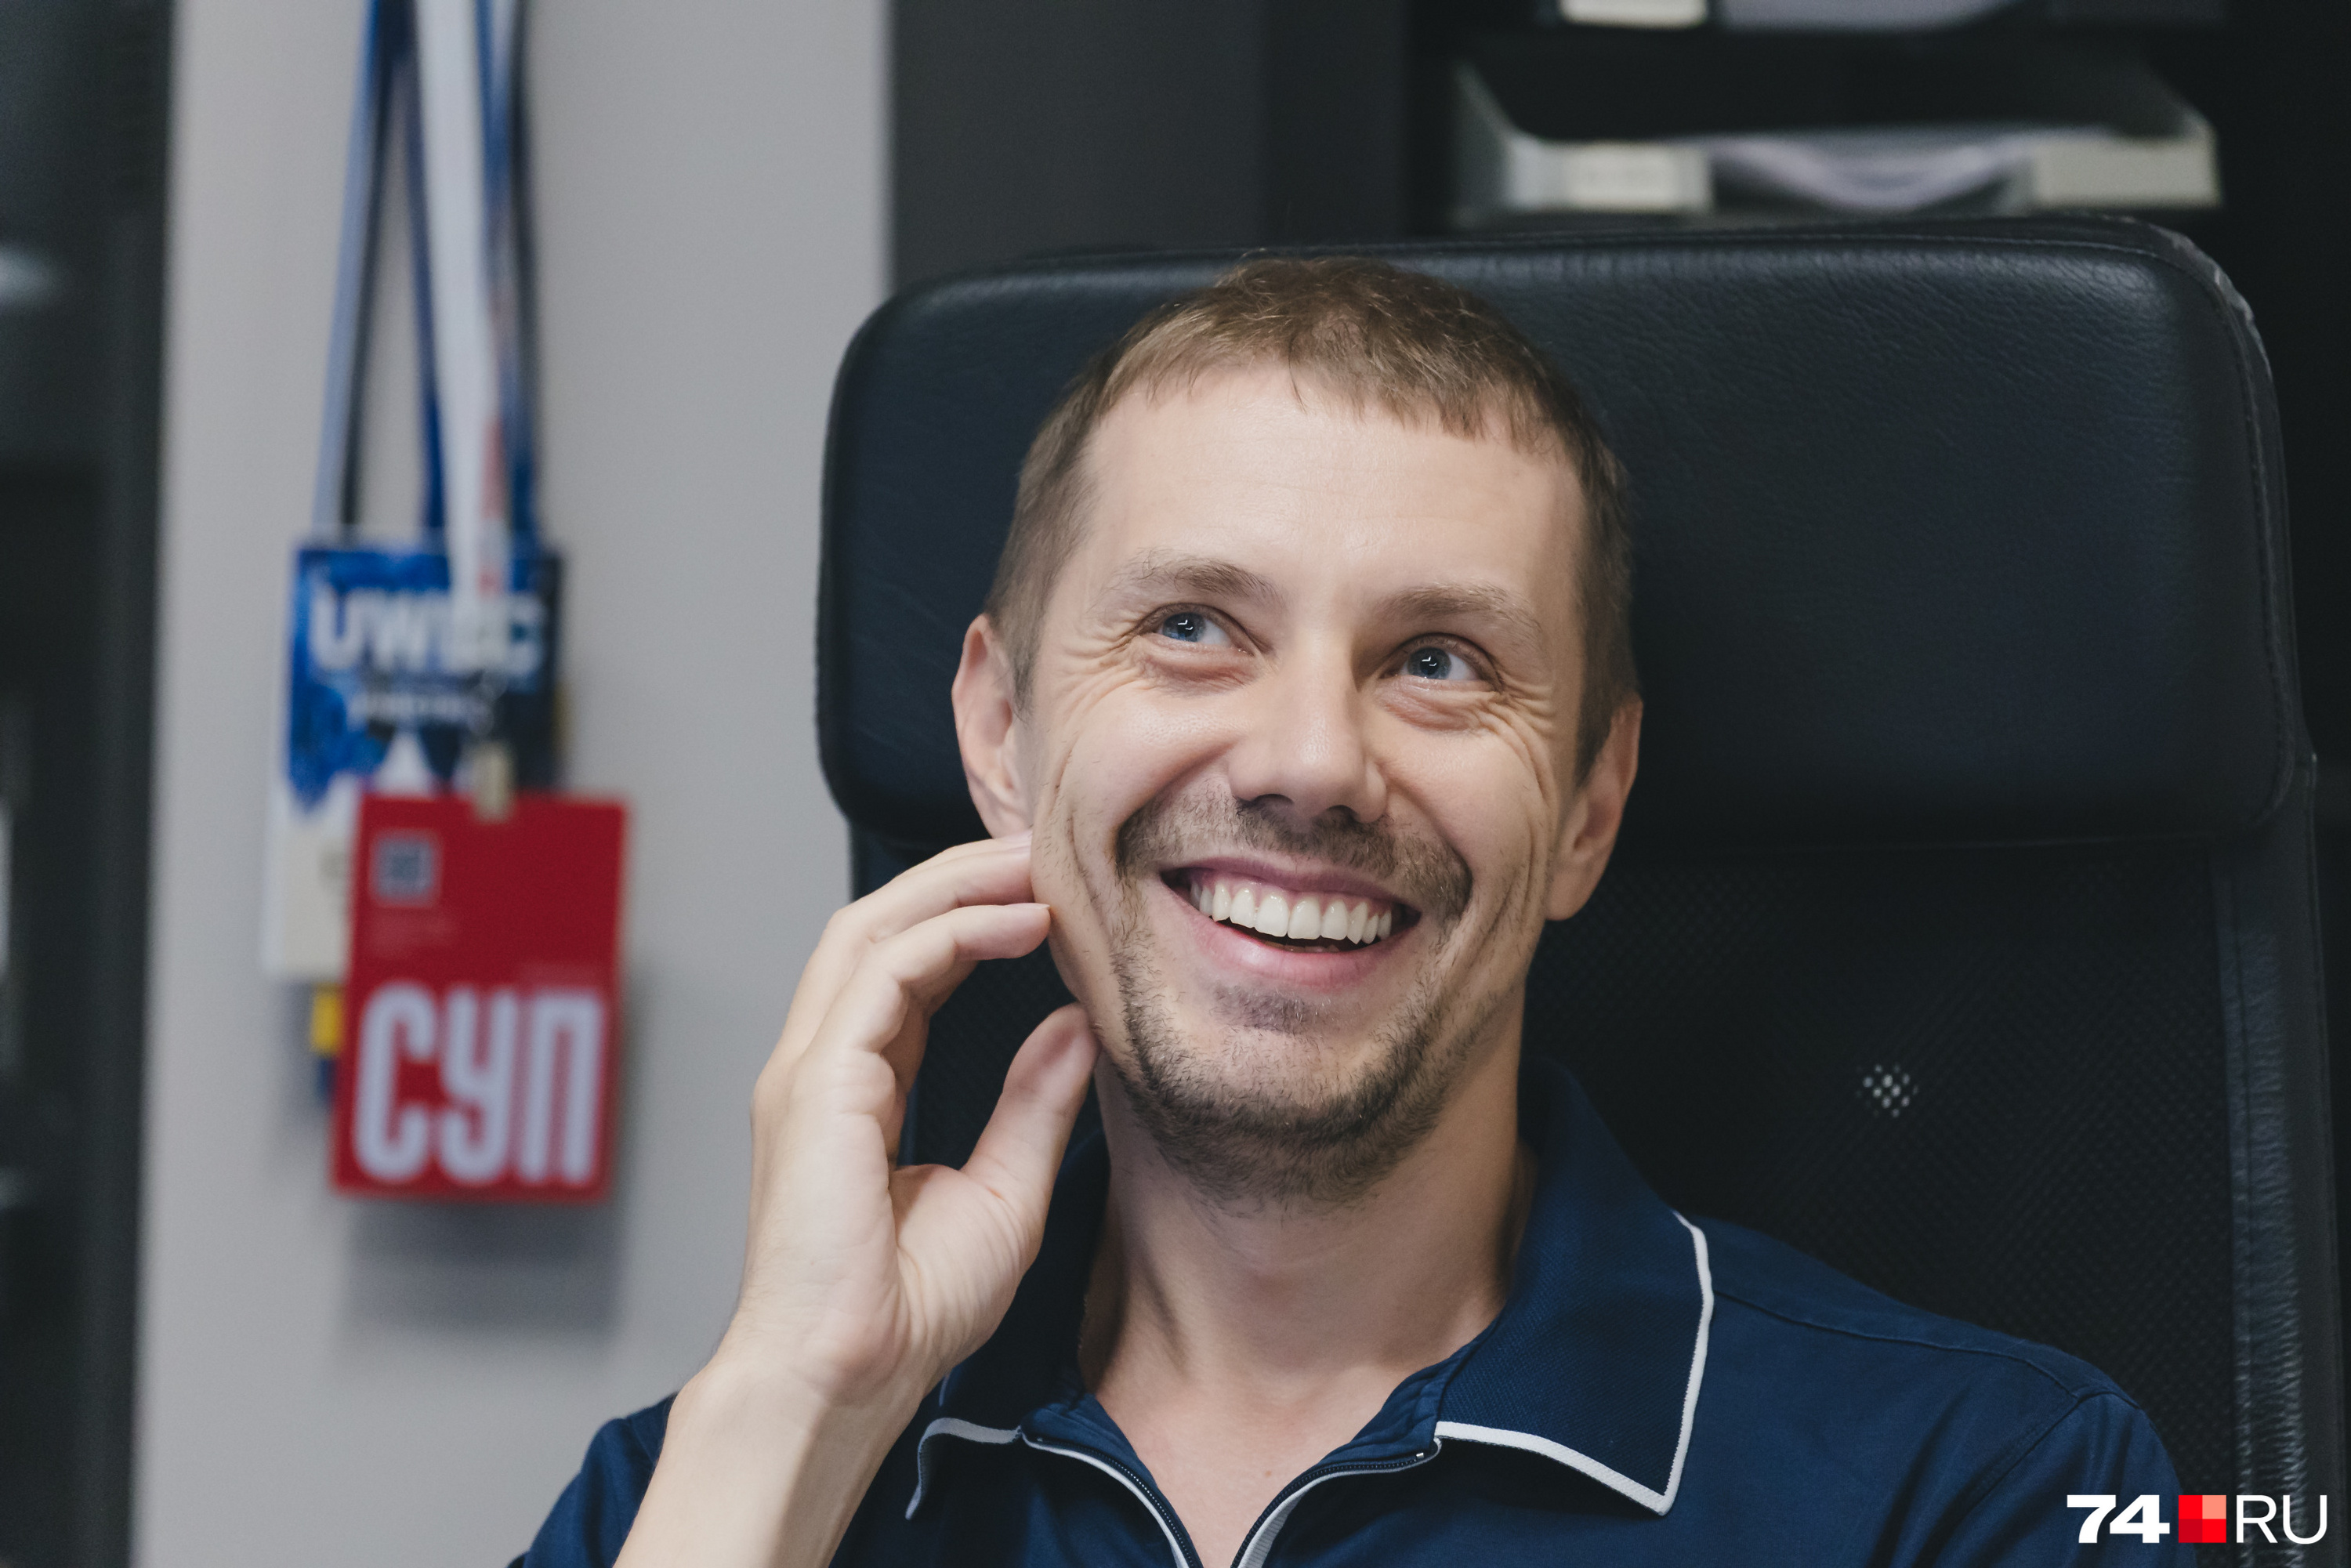 Вспоминая забавные случаи по работе, Сергей не может удержаться от улыбки